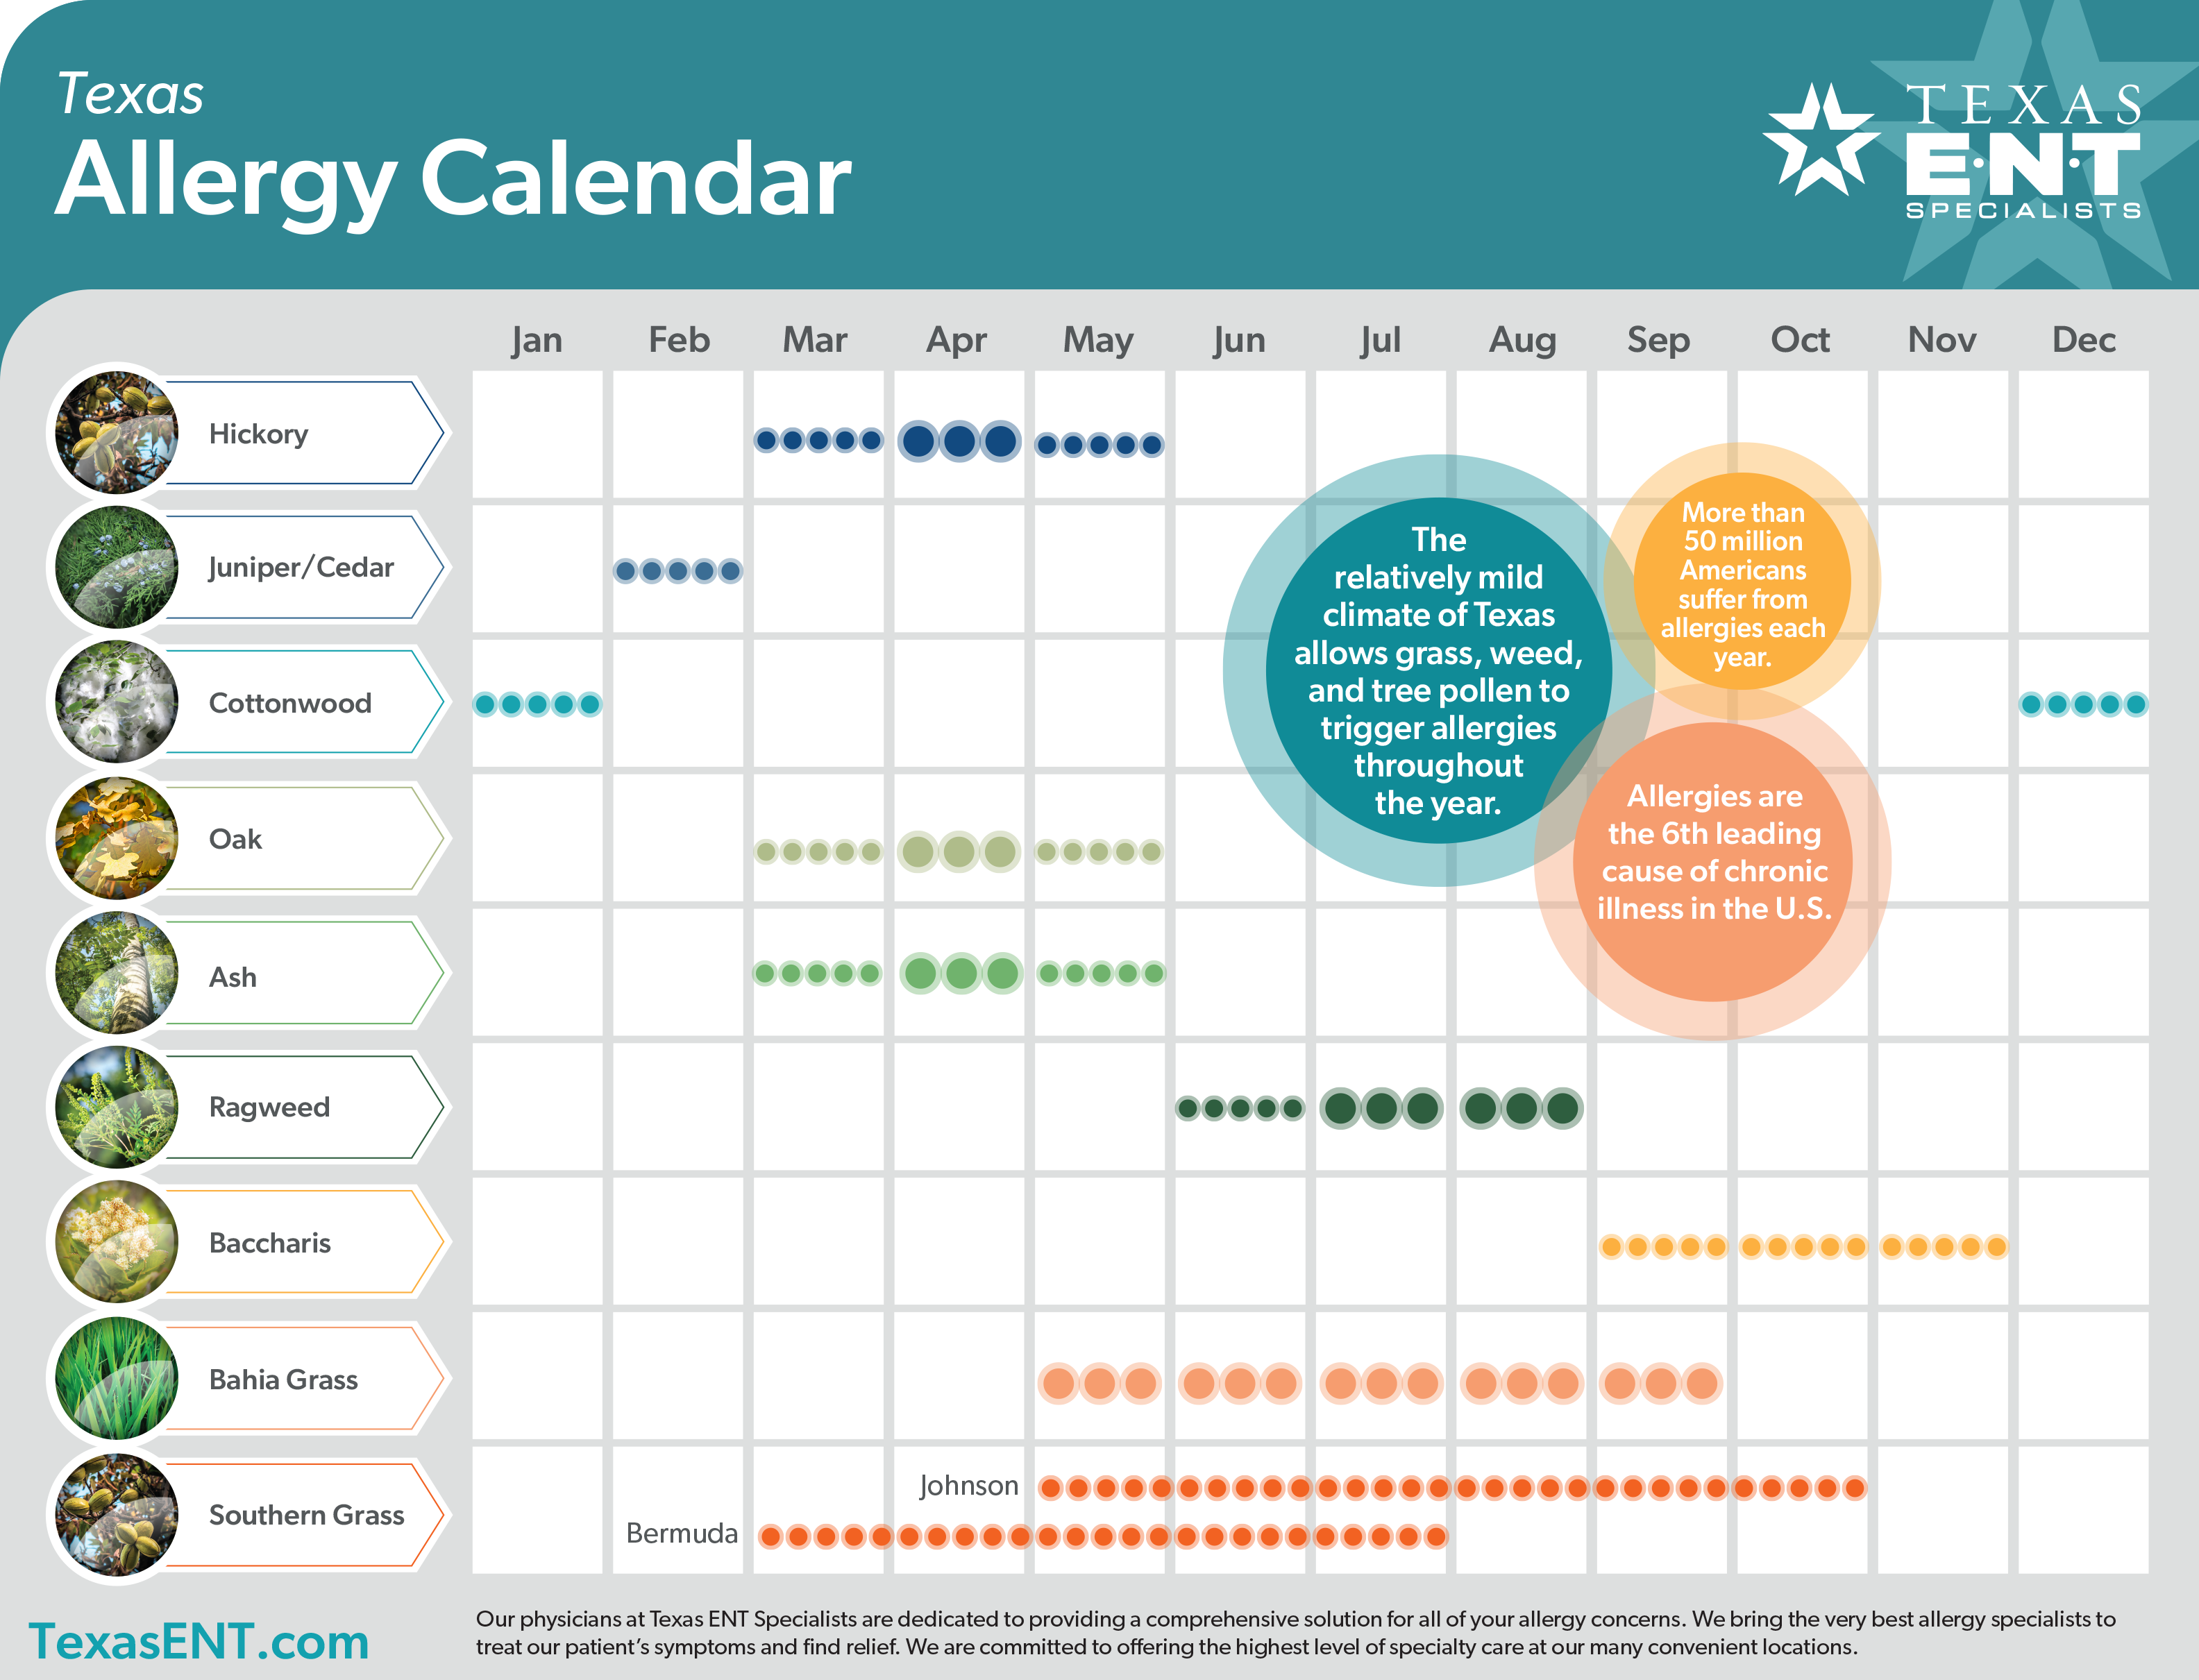 an image showing an allergy calendar